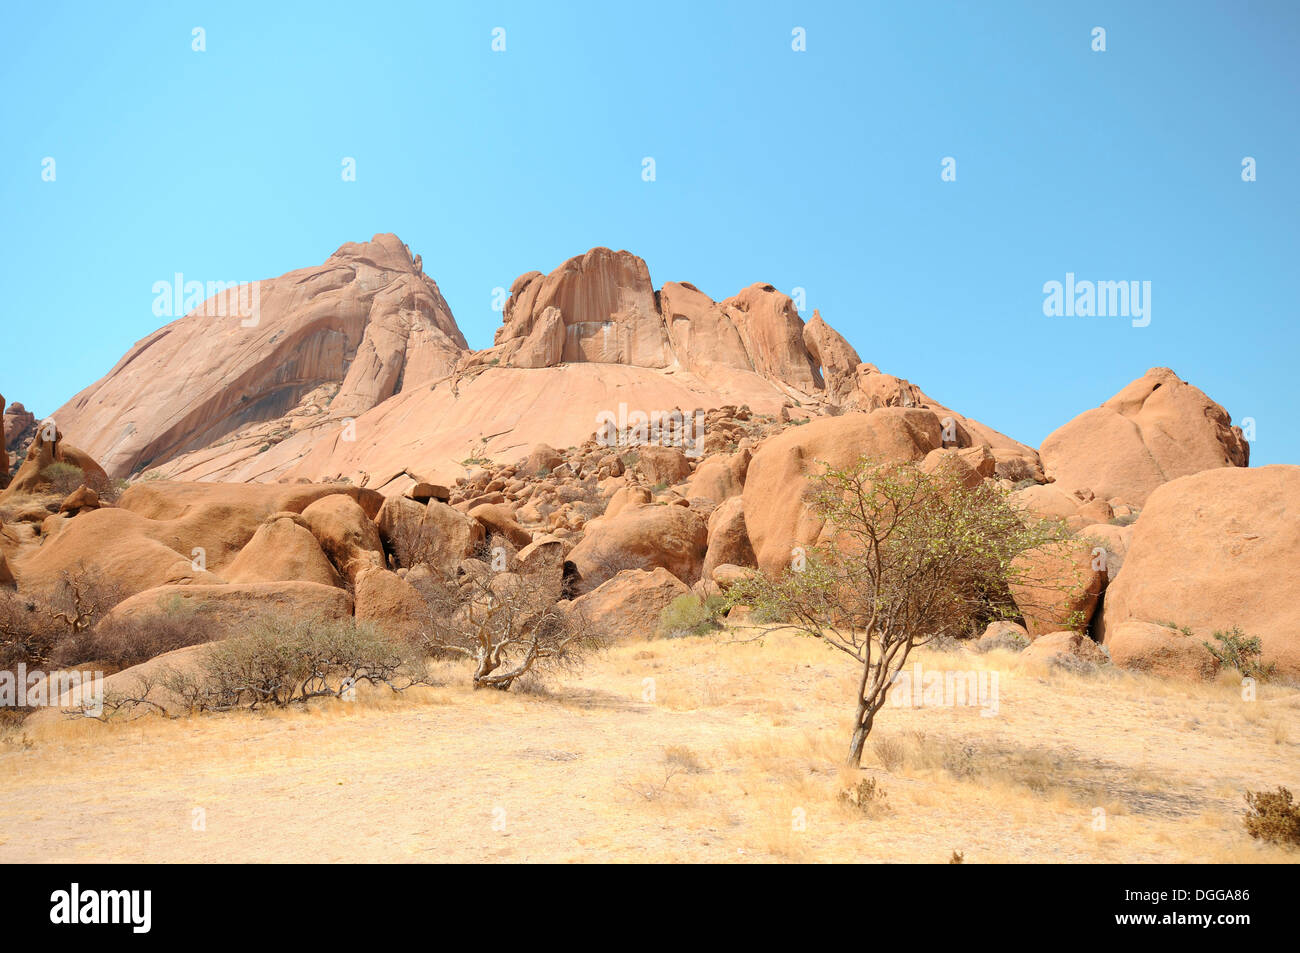 Paysage de savane avec des rochers de granit et de montagne Spitzkoppe, grosse Spitzkuppe Nature Reserve, Namibie Banque D'Images